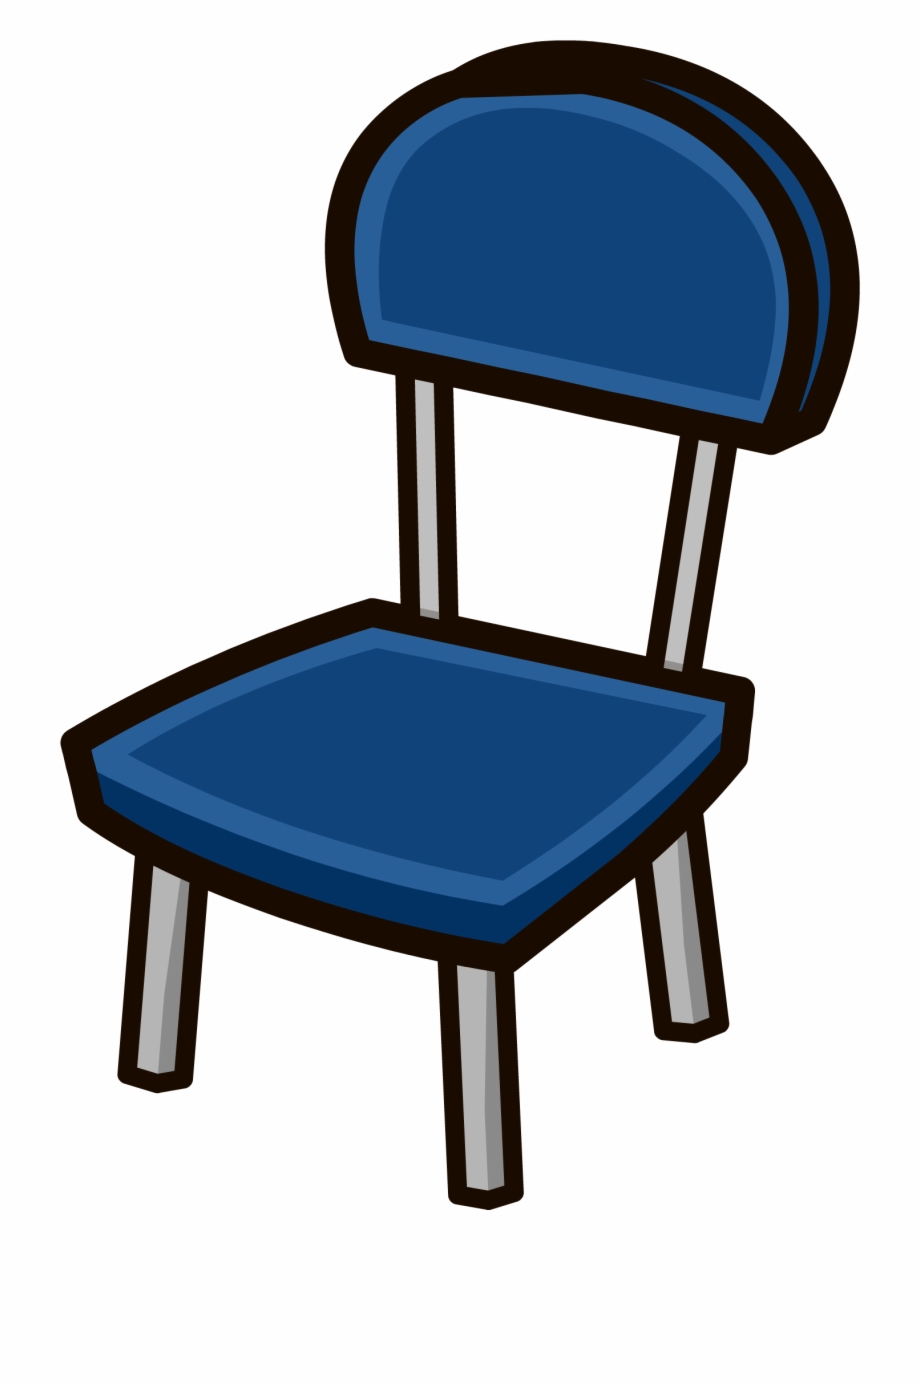 Chair Clipart Blue Chair Blue Chair Clip Art